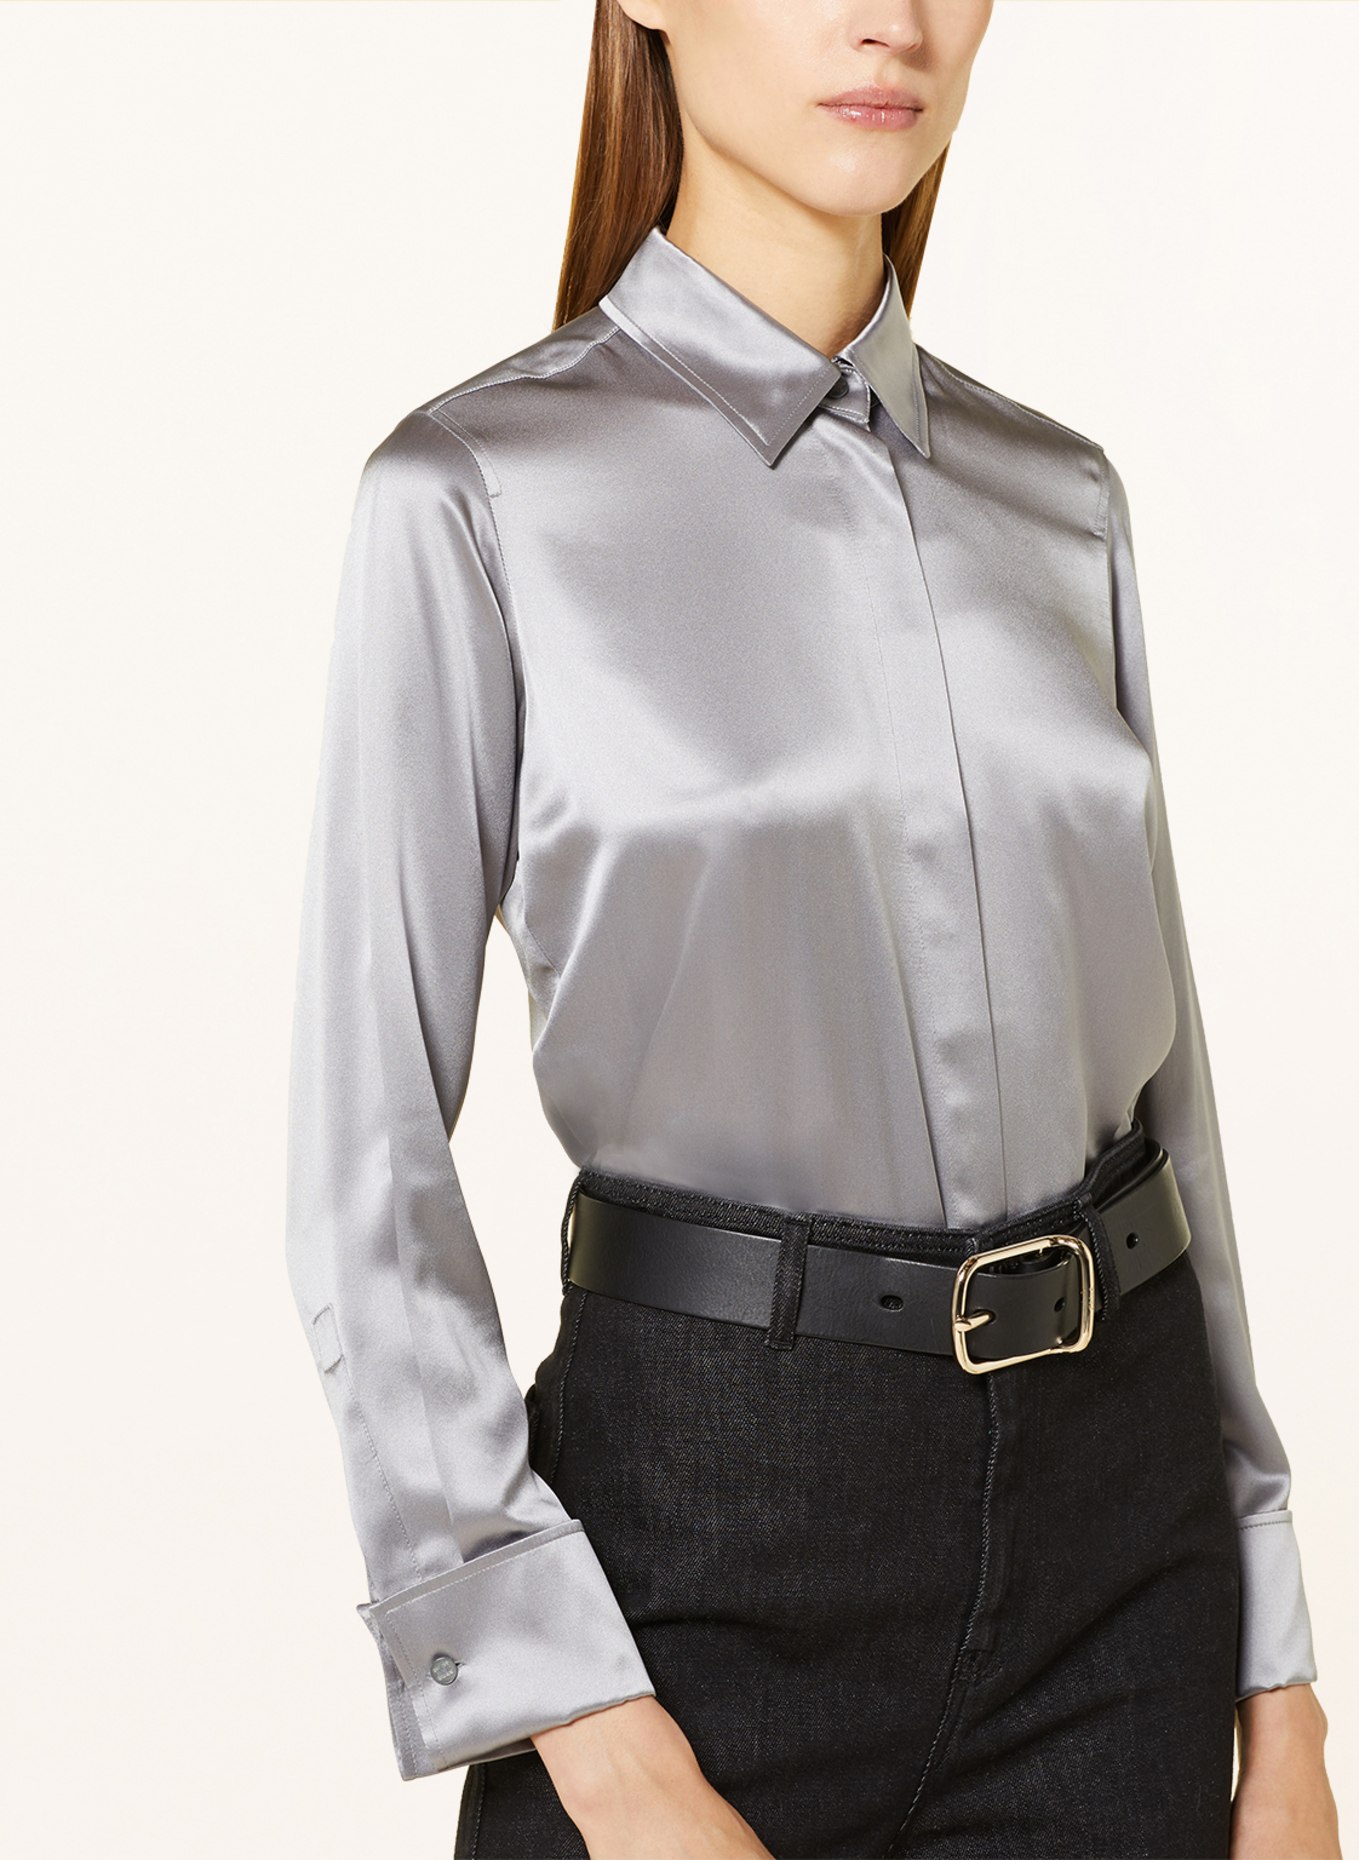 Max Mara Shirt blouse AIELLO made of silk, Color: GRAY (Image 4)